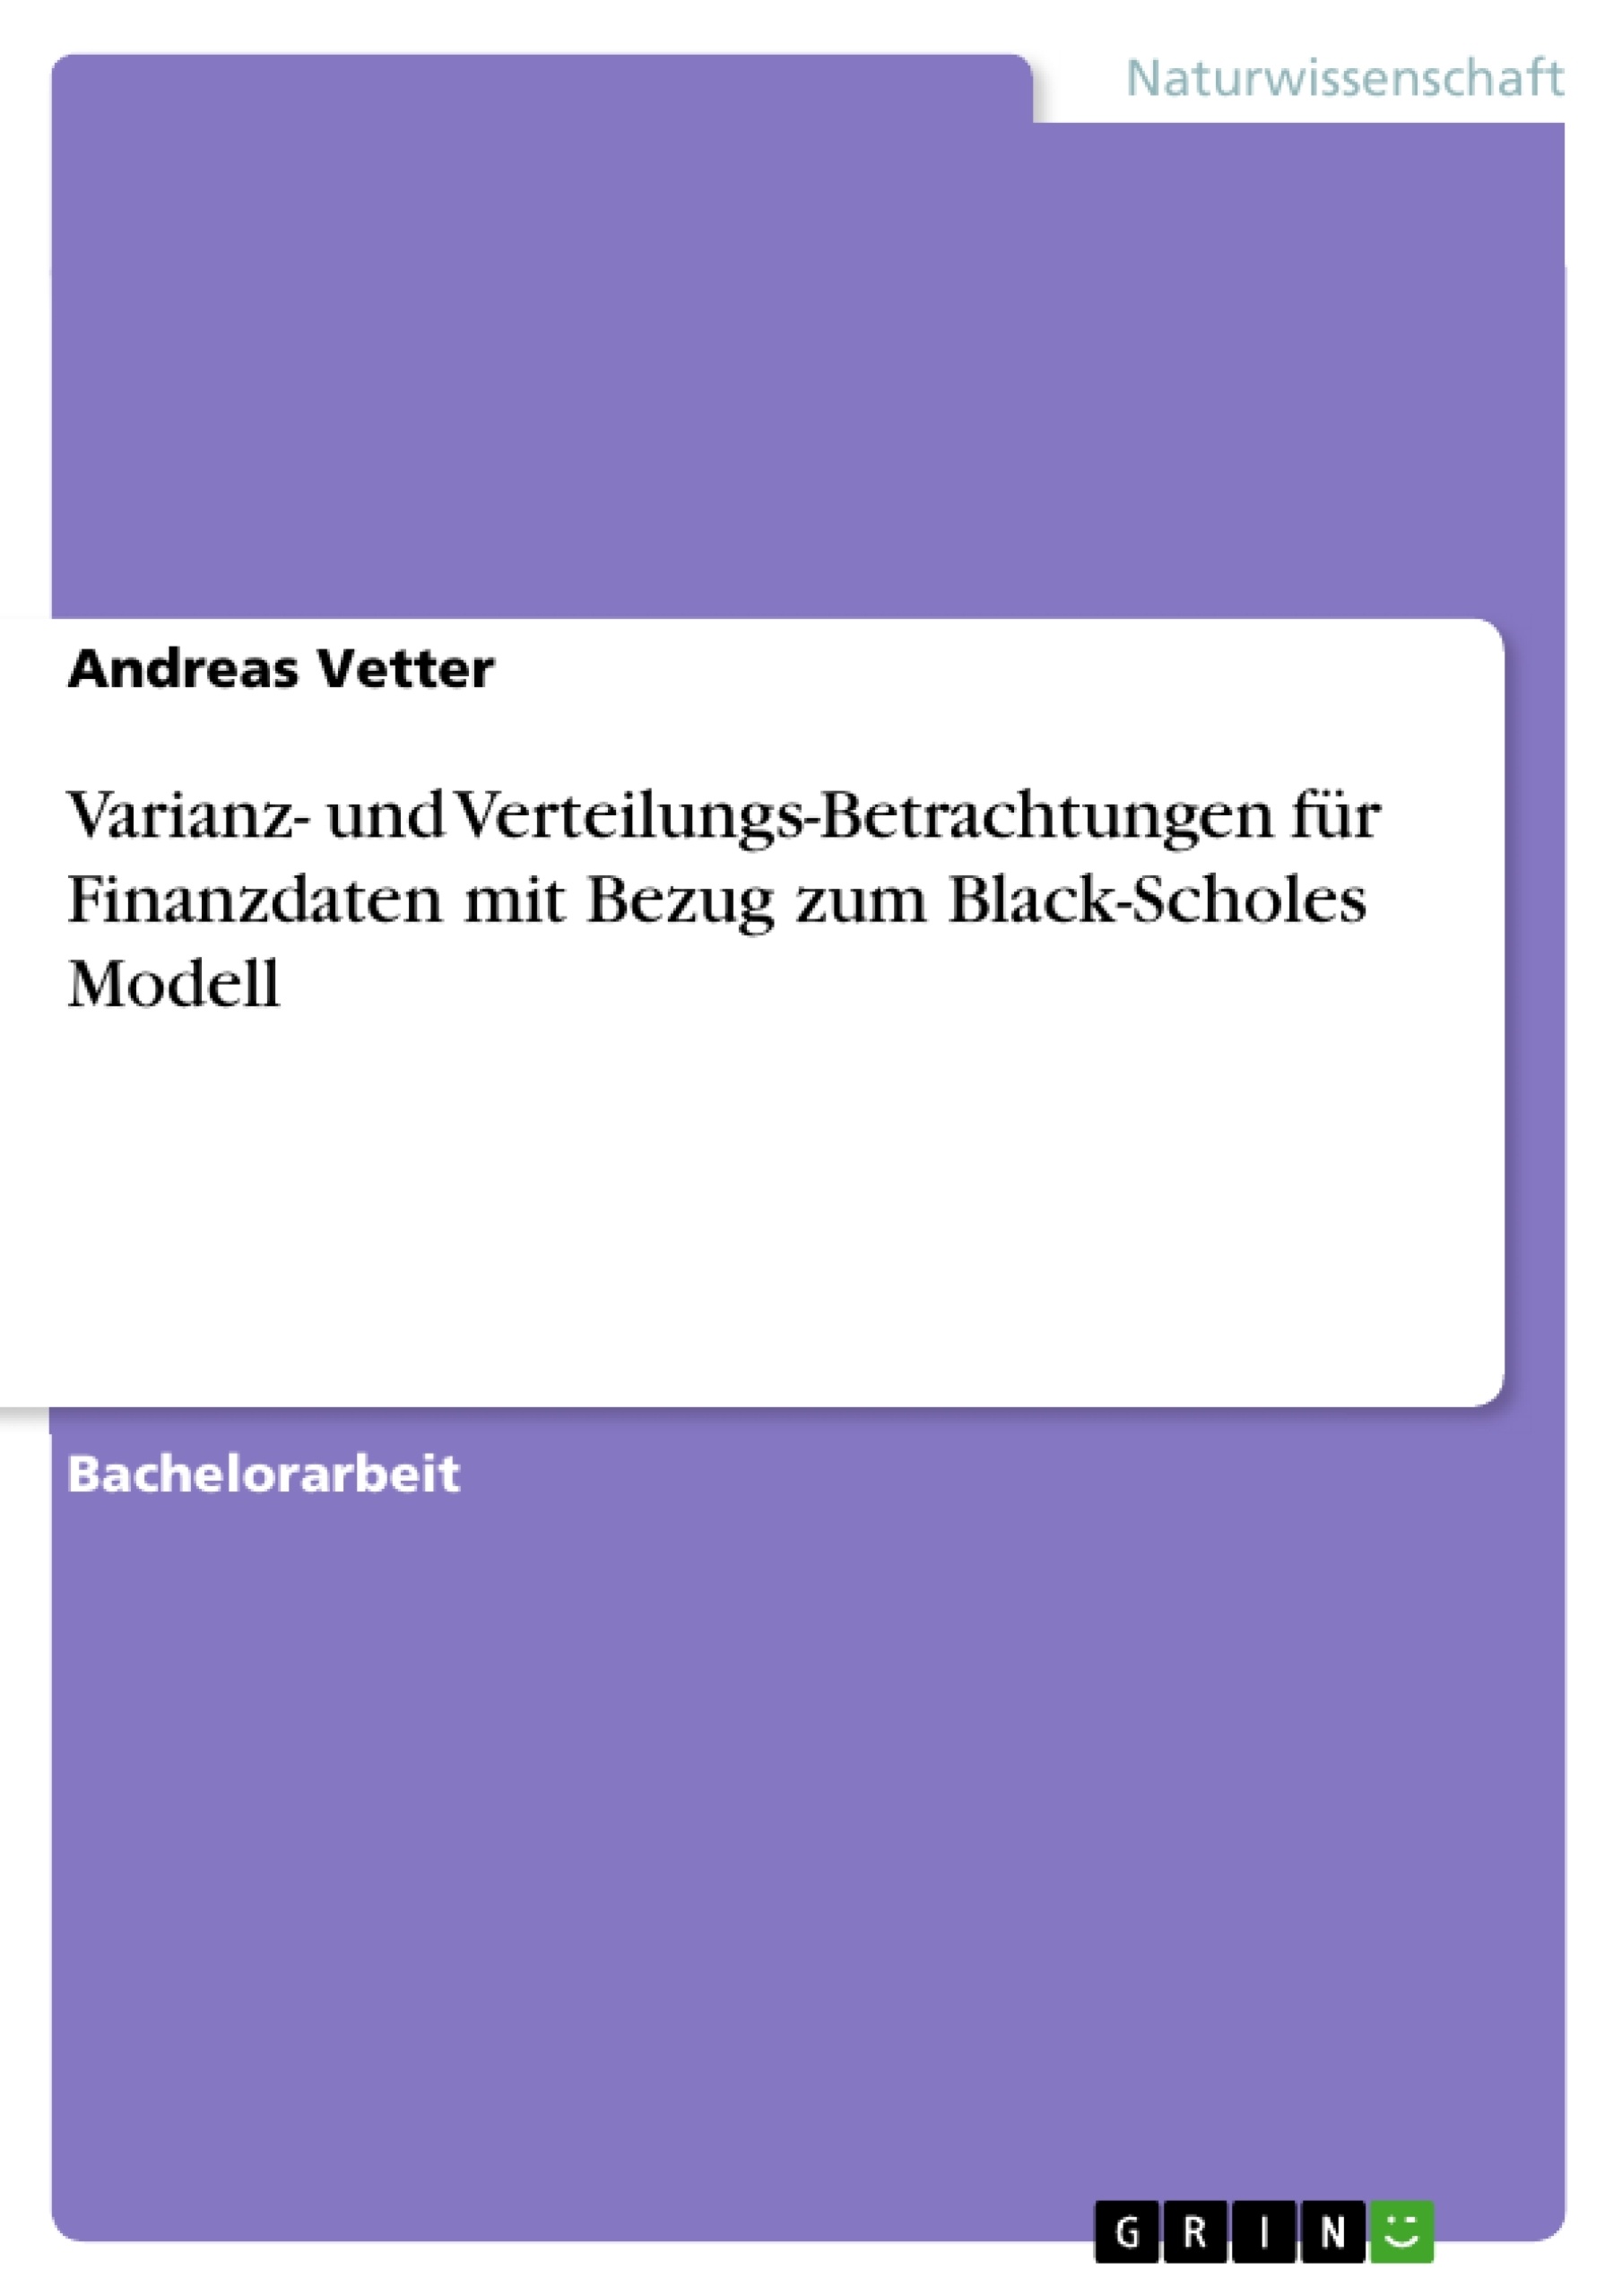 Title: Varianz- und Verteilungs-Betrachtungen für Finanzdaten mit Bezug zum Black-Scholes Modell